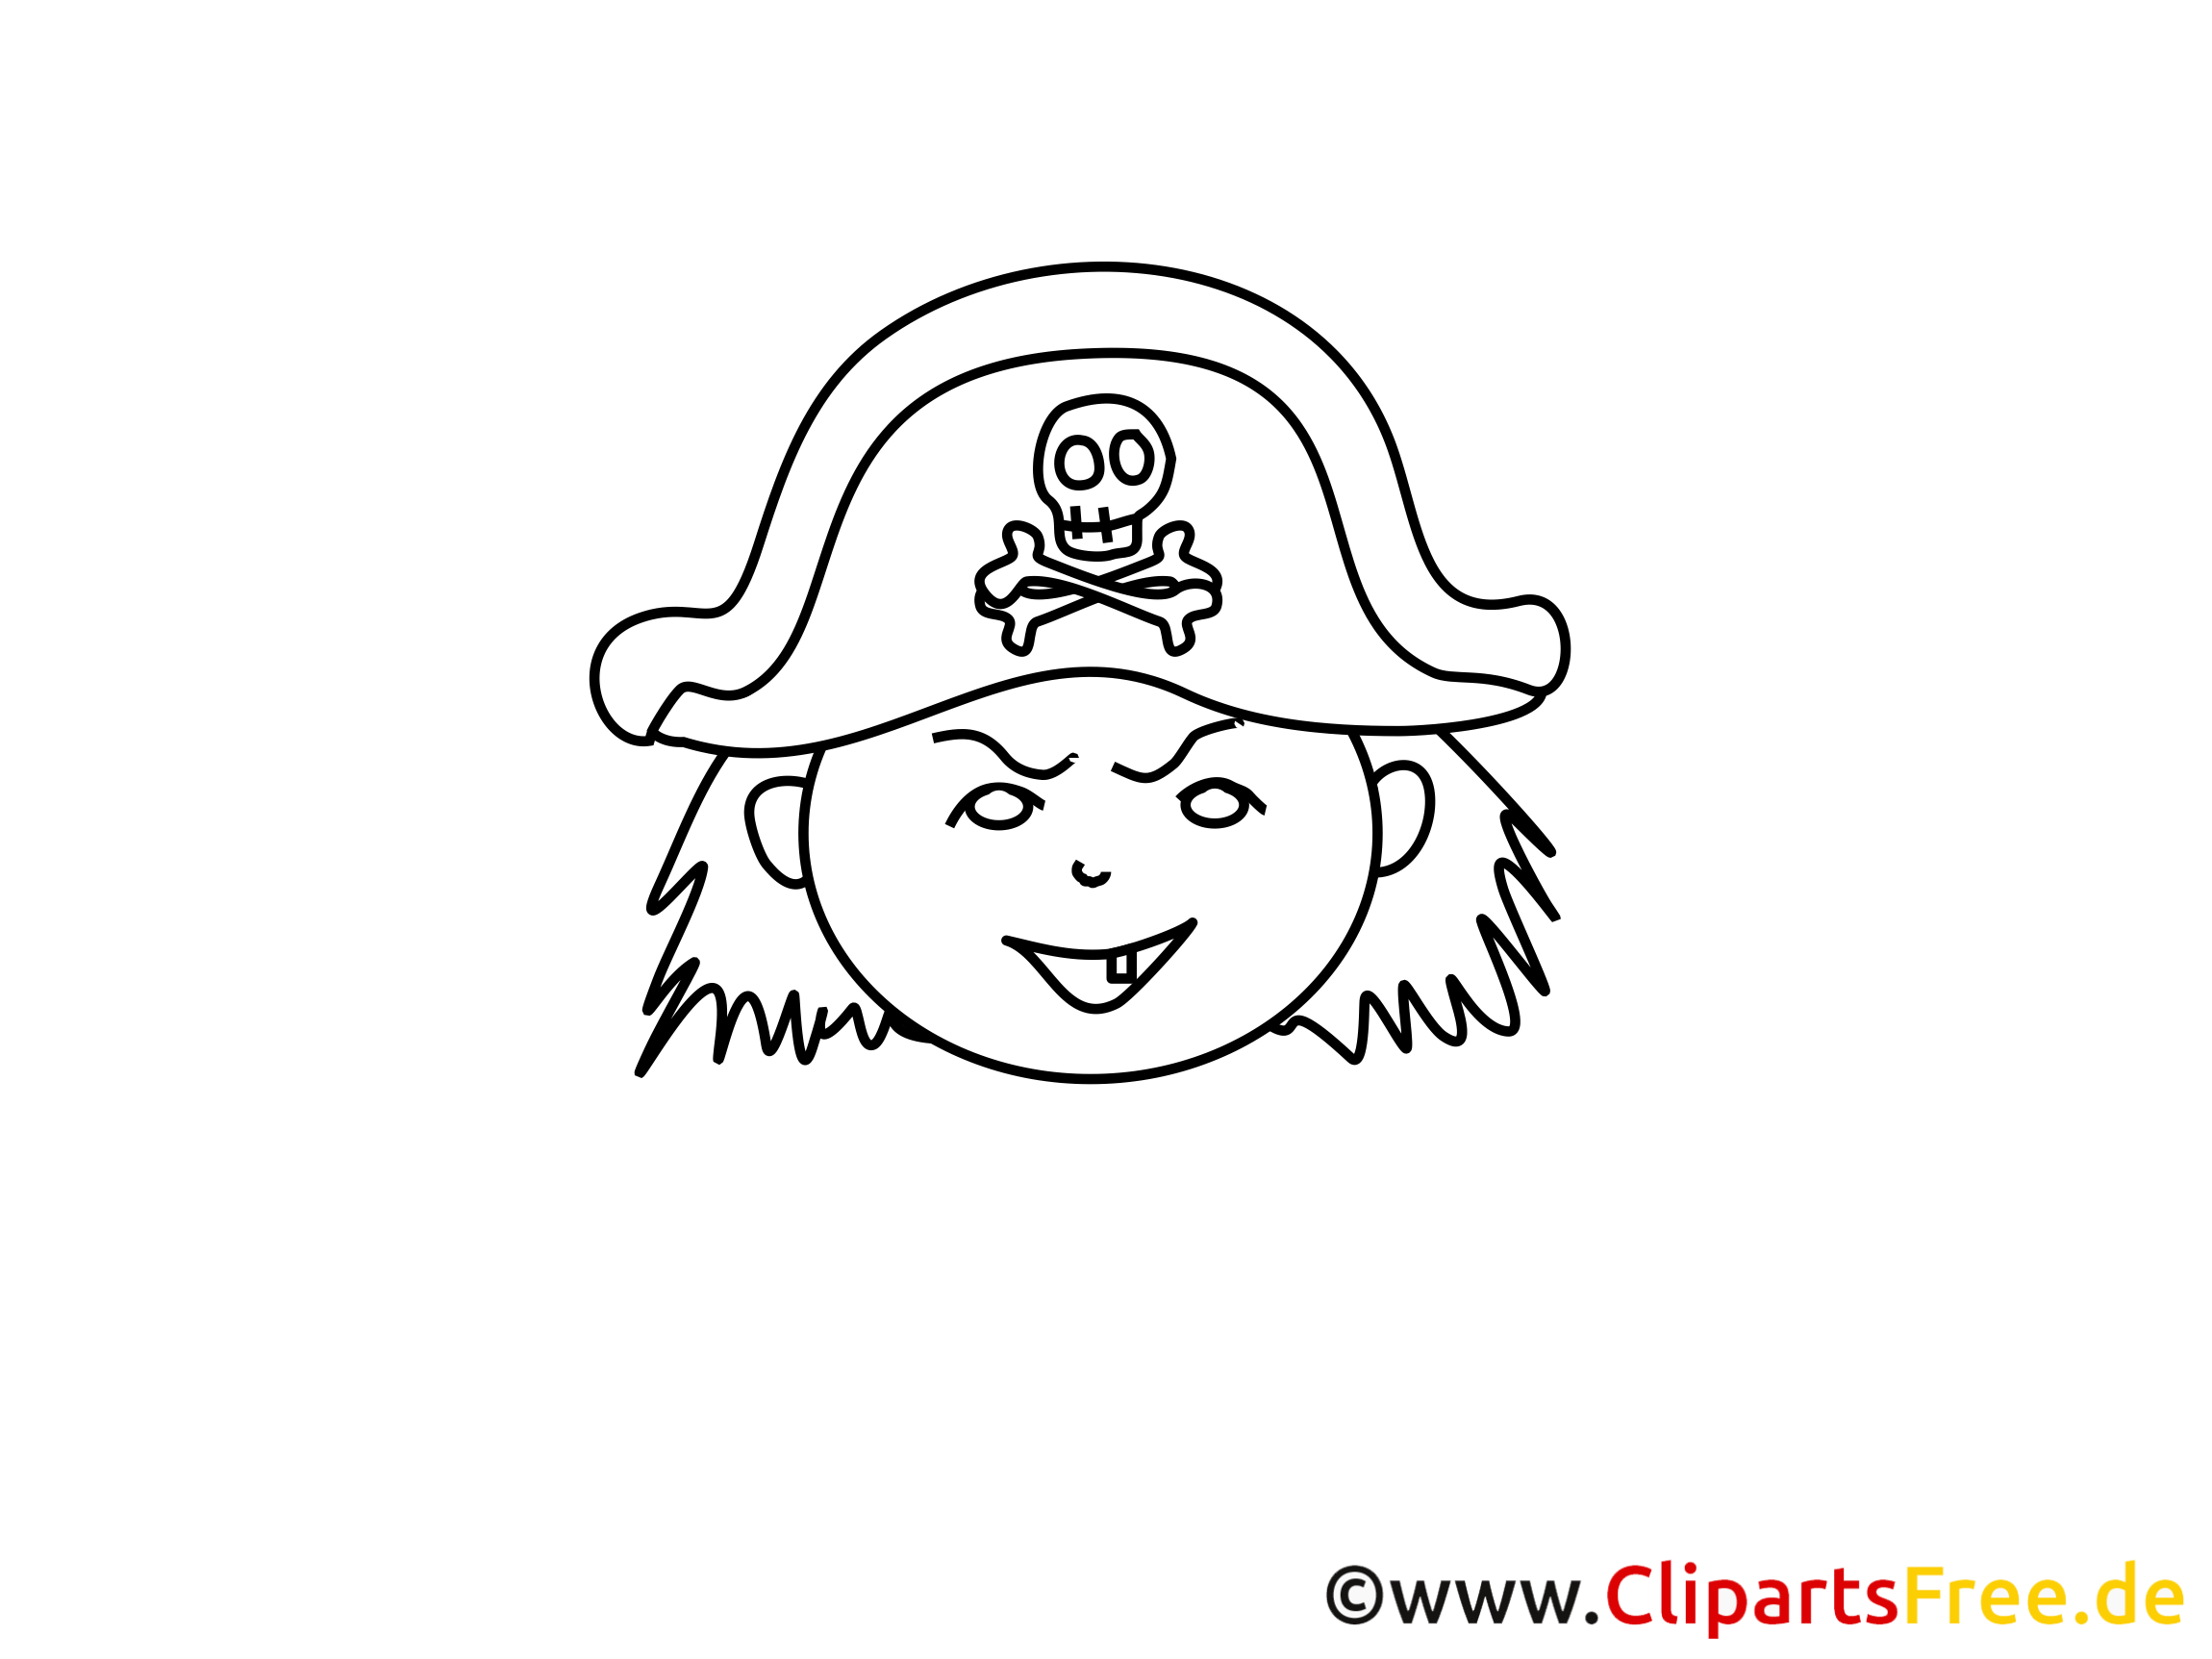 Pirate cliparts gratuis – Gens à imprimer